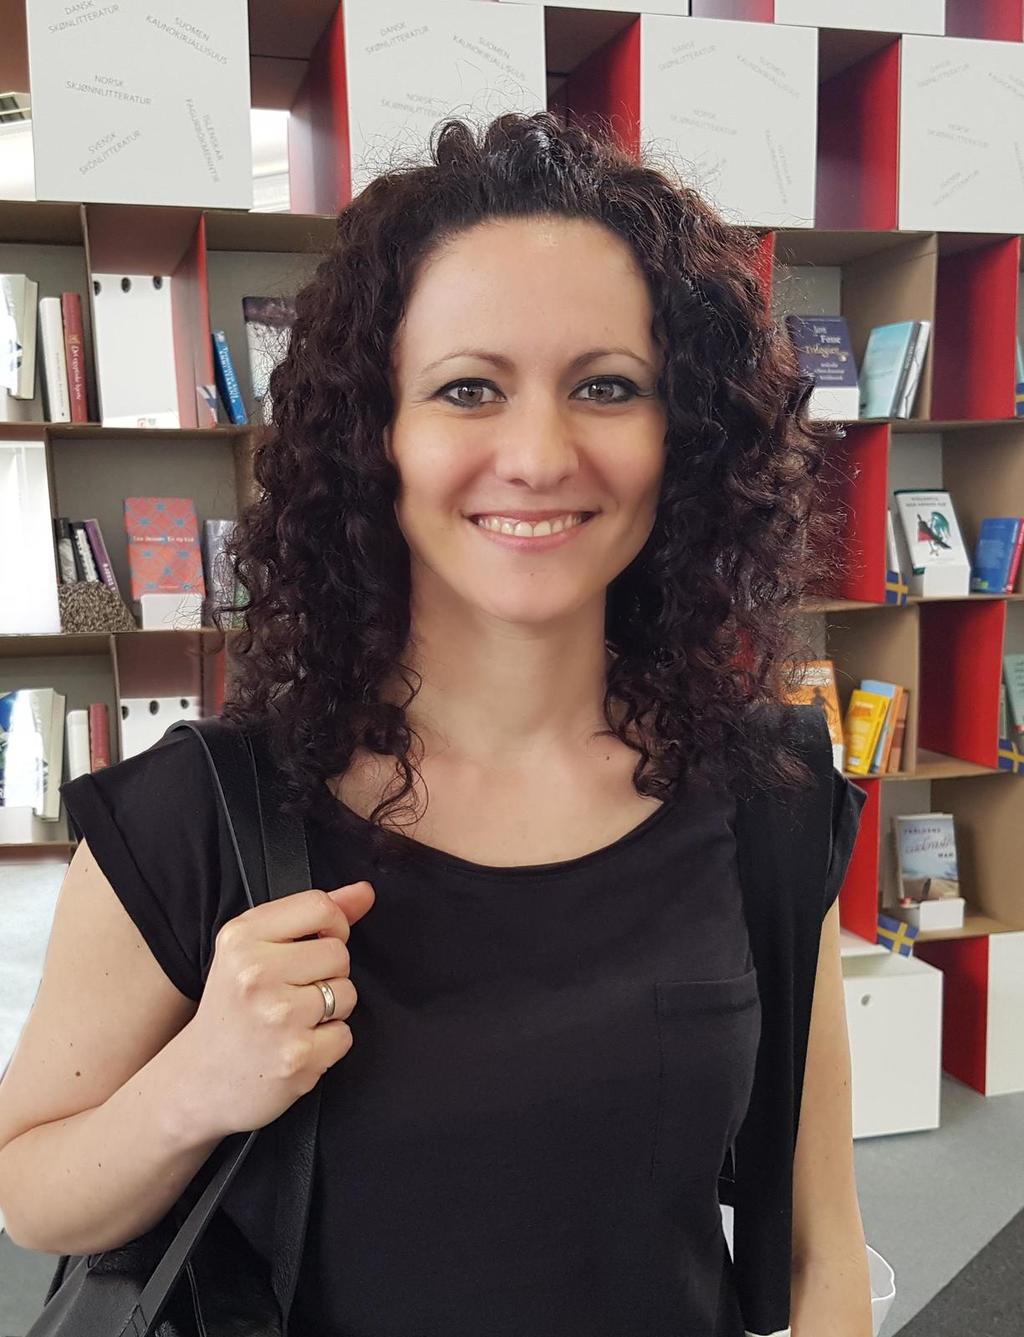 Julia Różewicz urodzona w 1982 r. tłumaczka literatury czeskiej i założycielka wydawnictwa Afera. W 2013 r. została laureatką nagrody Literatury na Świecie w kategorii Nowa Twarz".